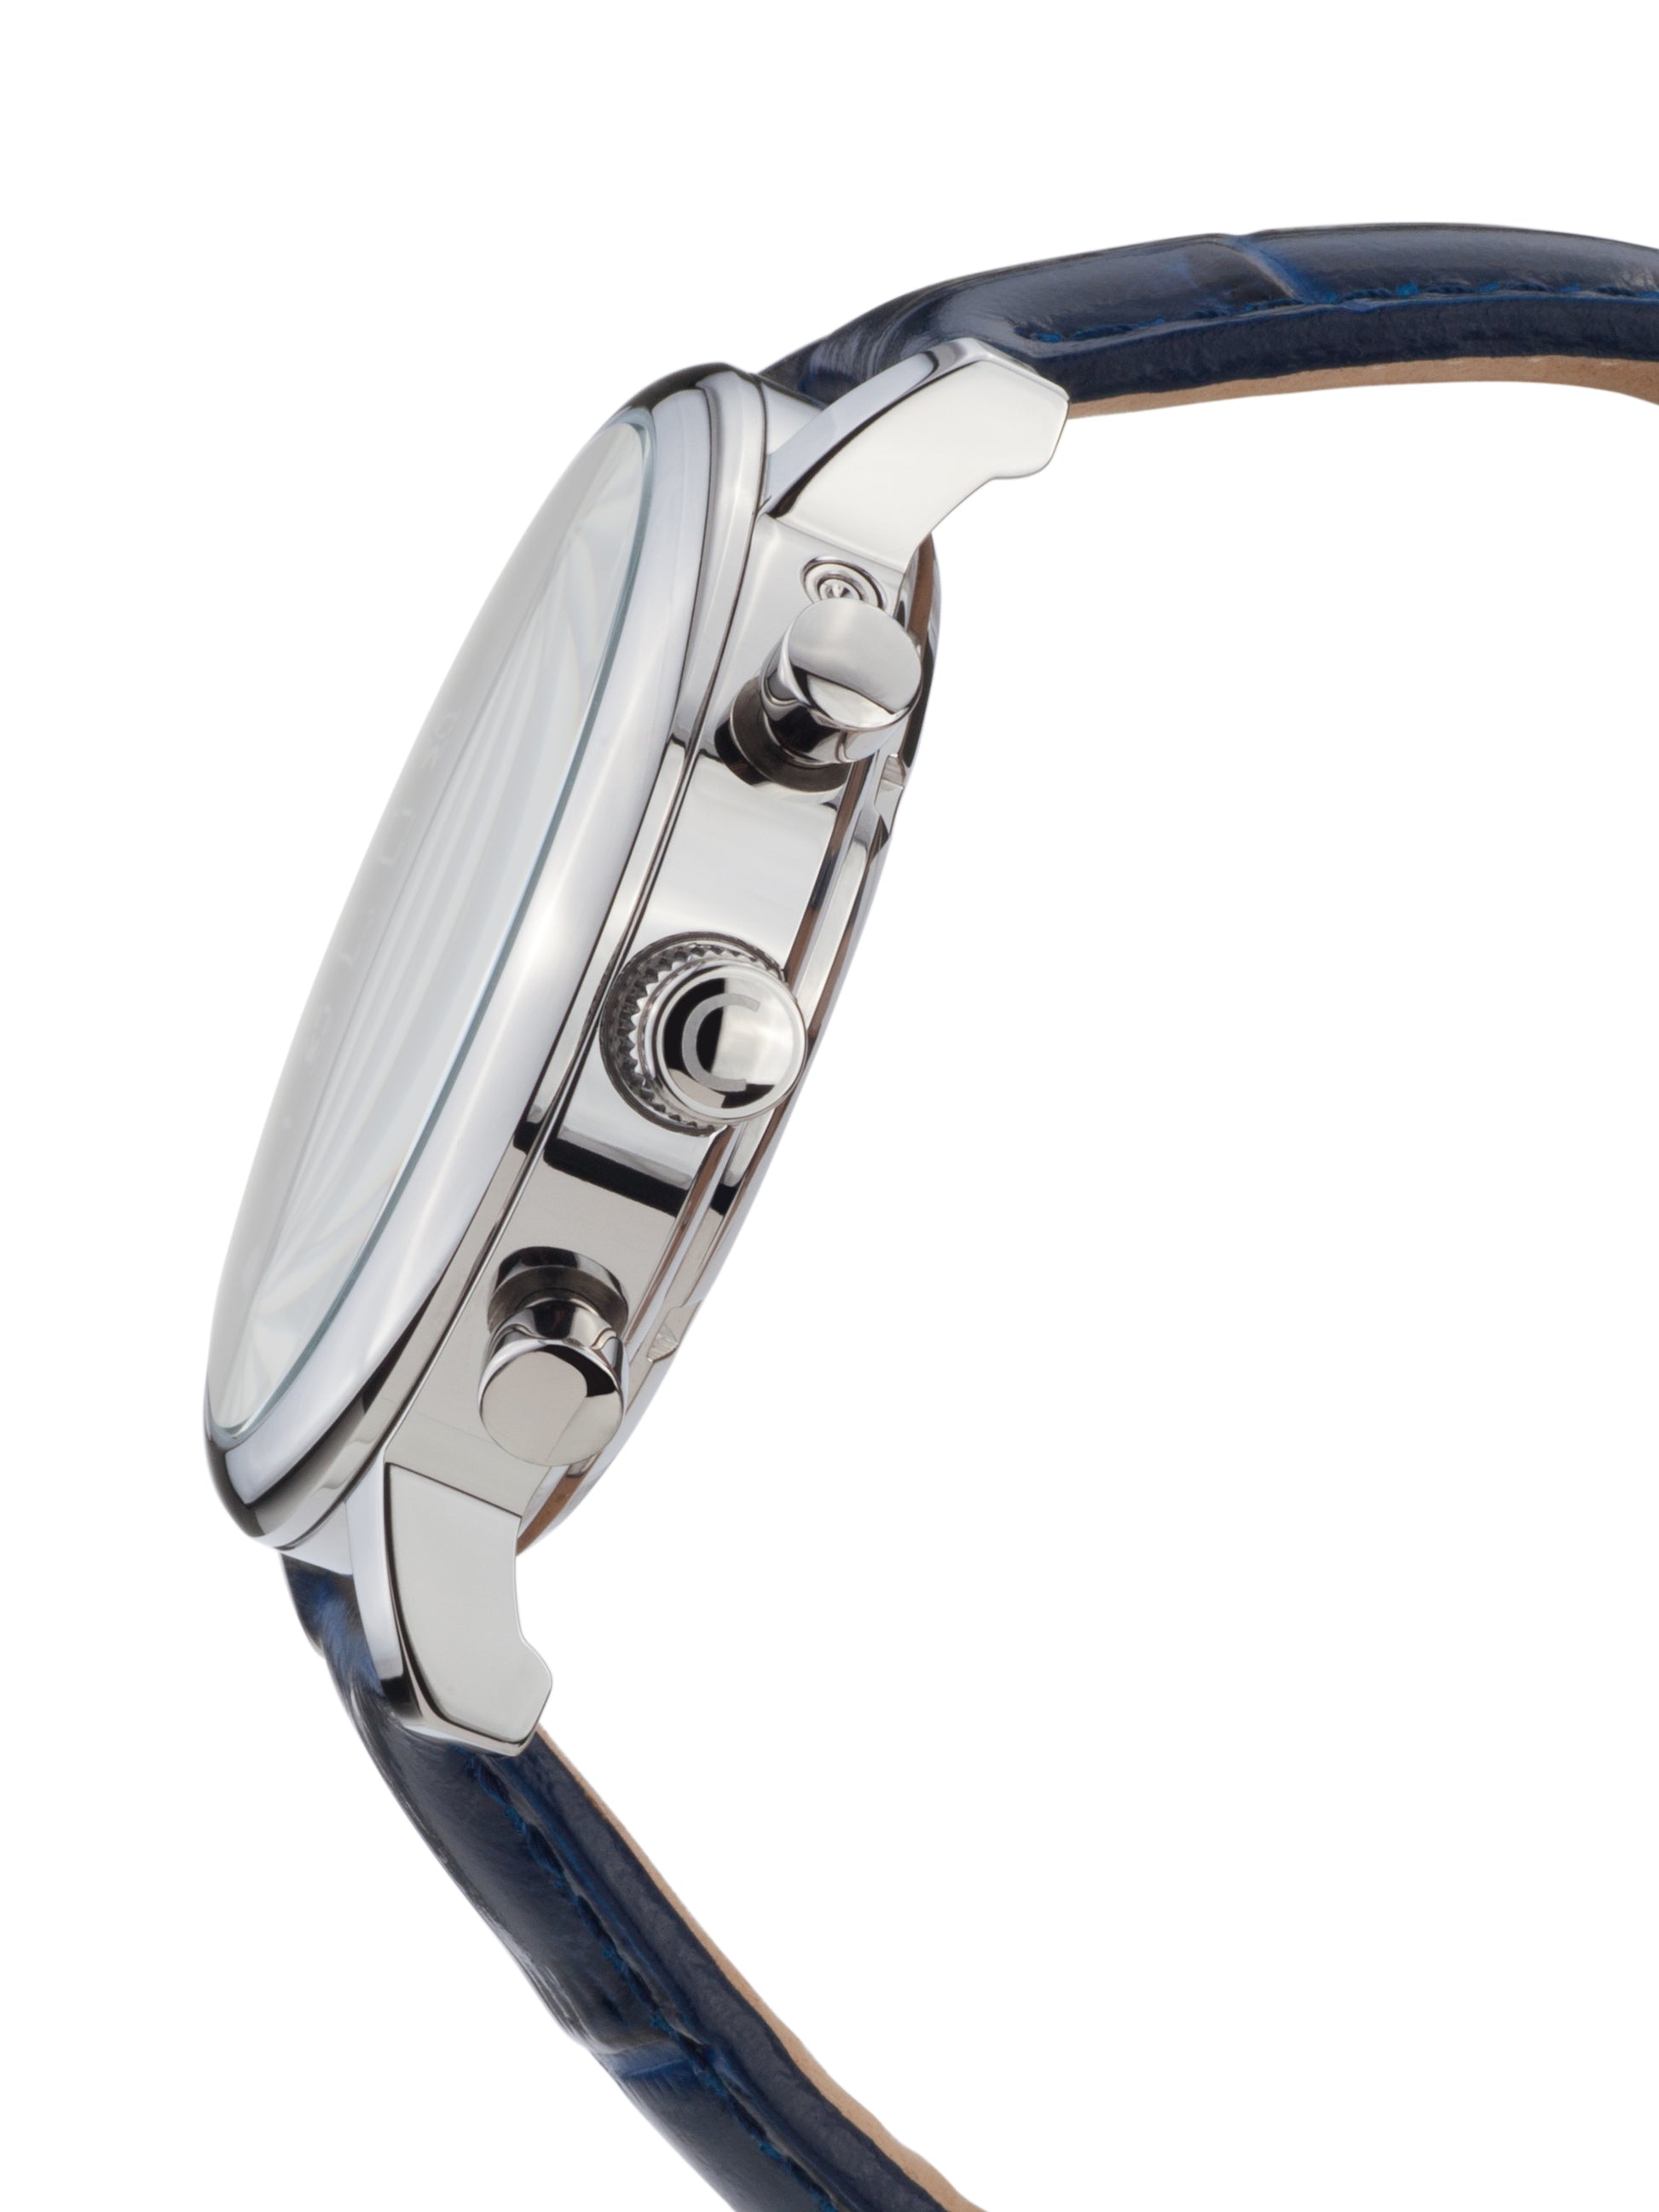 Automatic watches — Argos — Chrono Diamond — steel silver